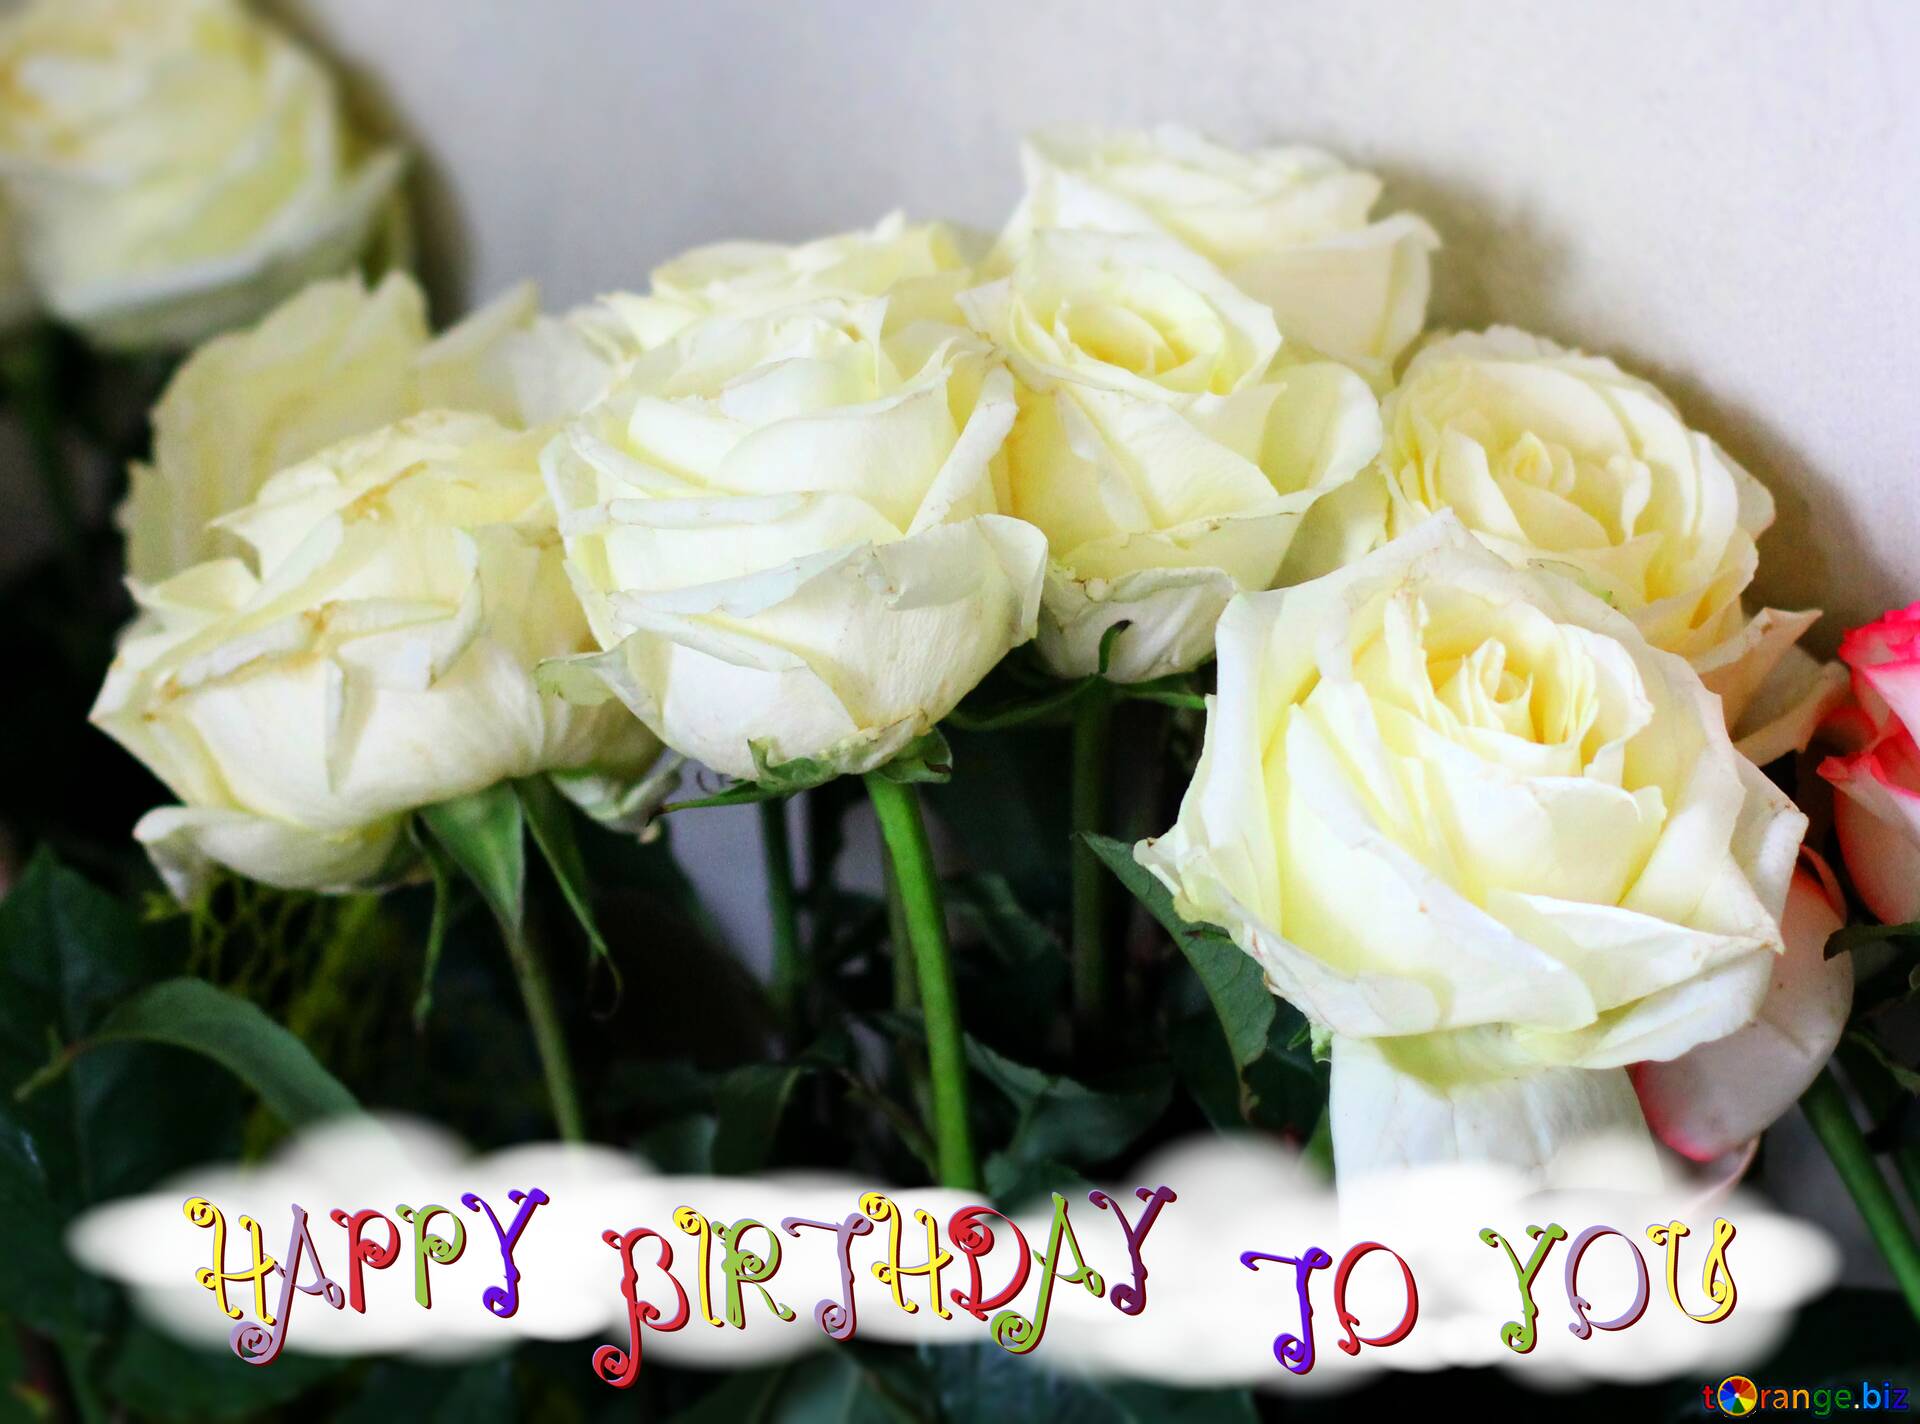 1920x1424 Tải xuống hình ảnh miễn phí Hoa hồng trắng Hoa chúc mừng sinh nhật trên CC BY License Hình ảnh miễn phí Fx №207563